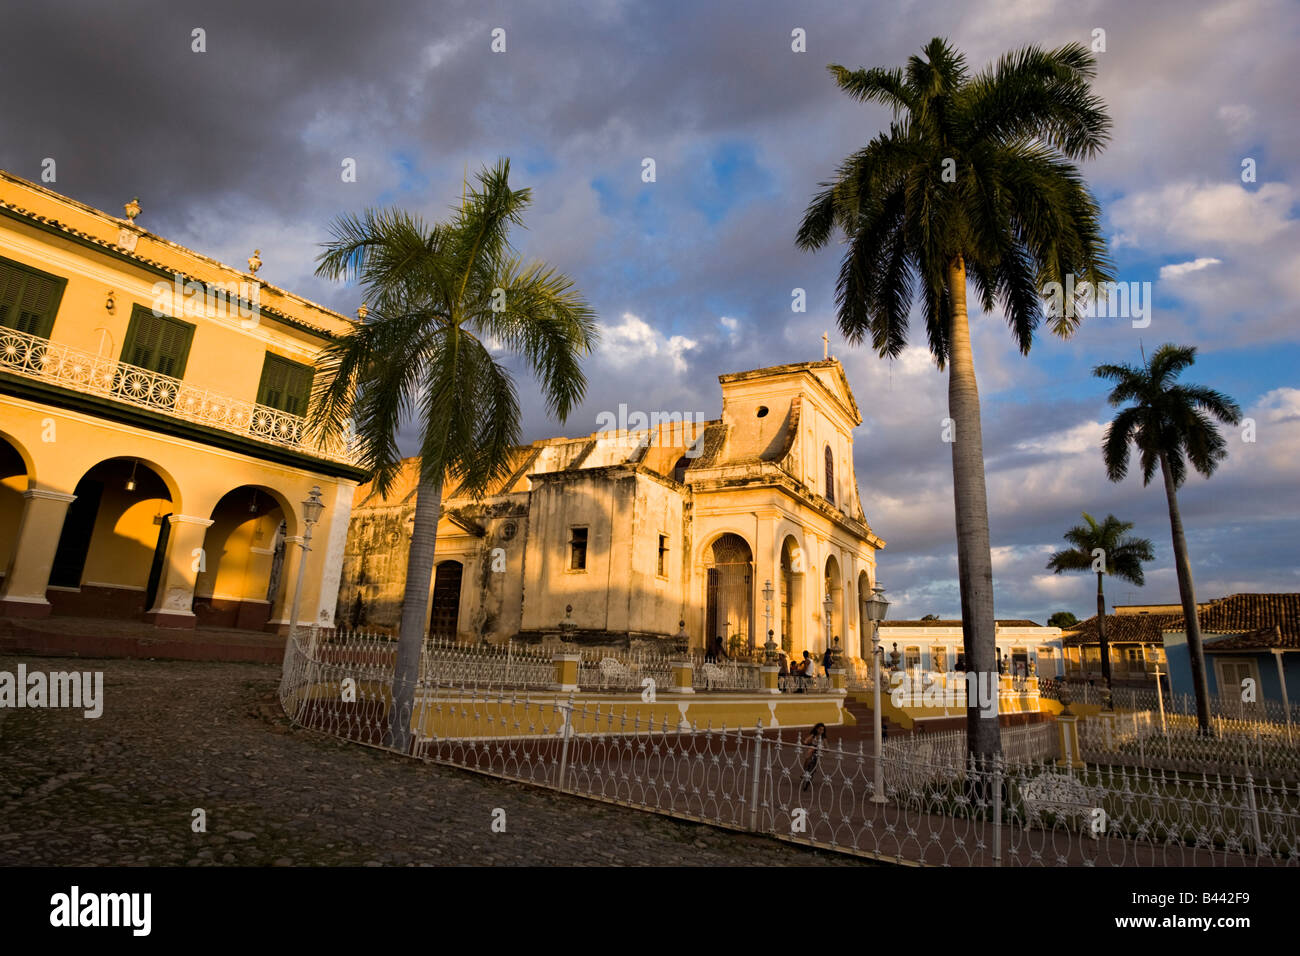 Iglesia Parroquial de la Santisima Trinidad. Trinidad. Cuba. Stock Photo